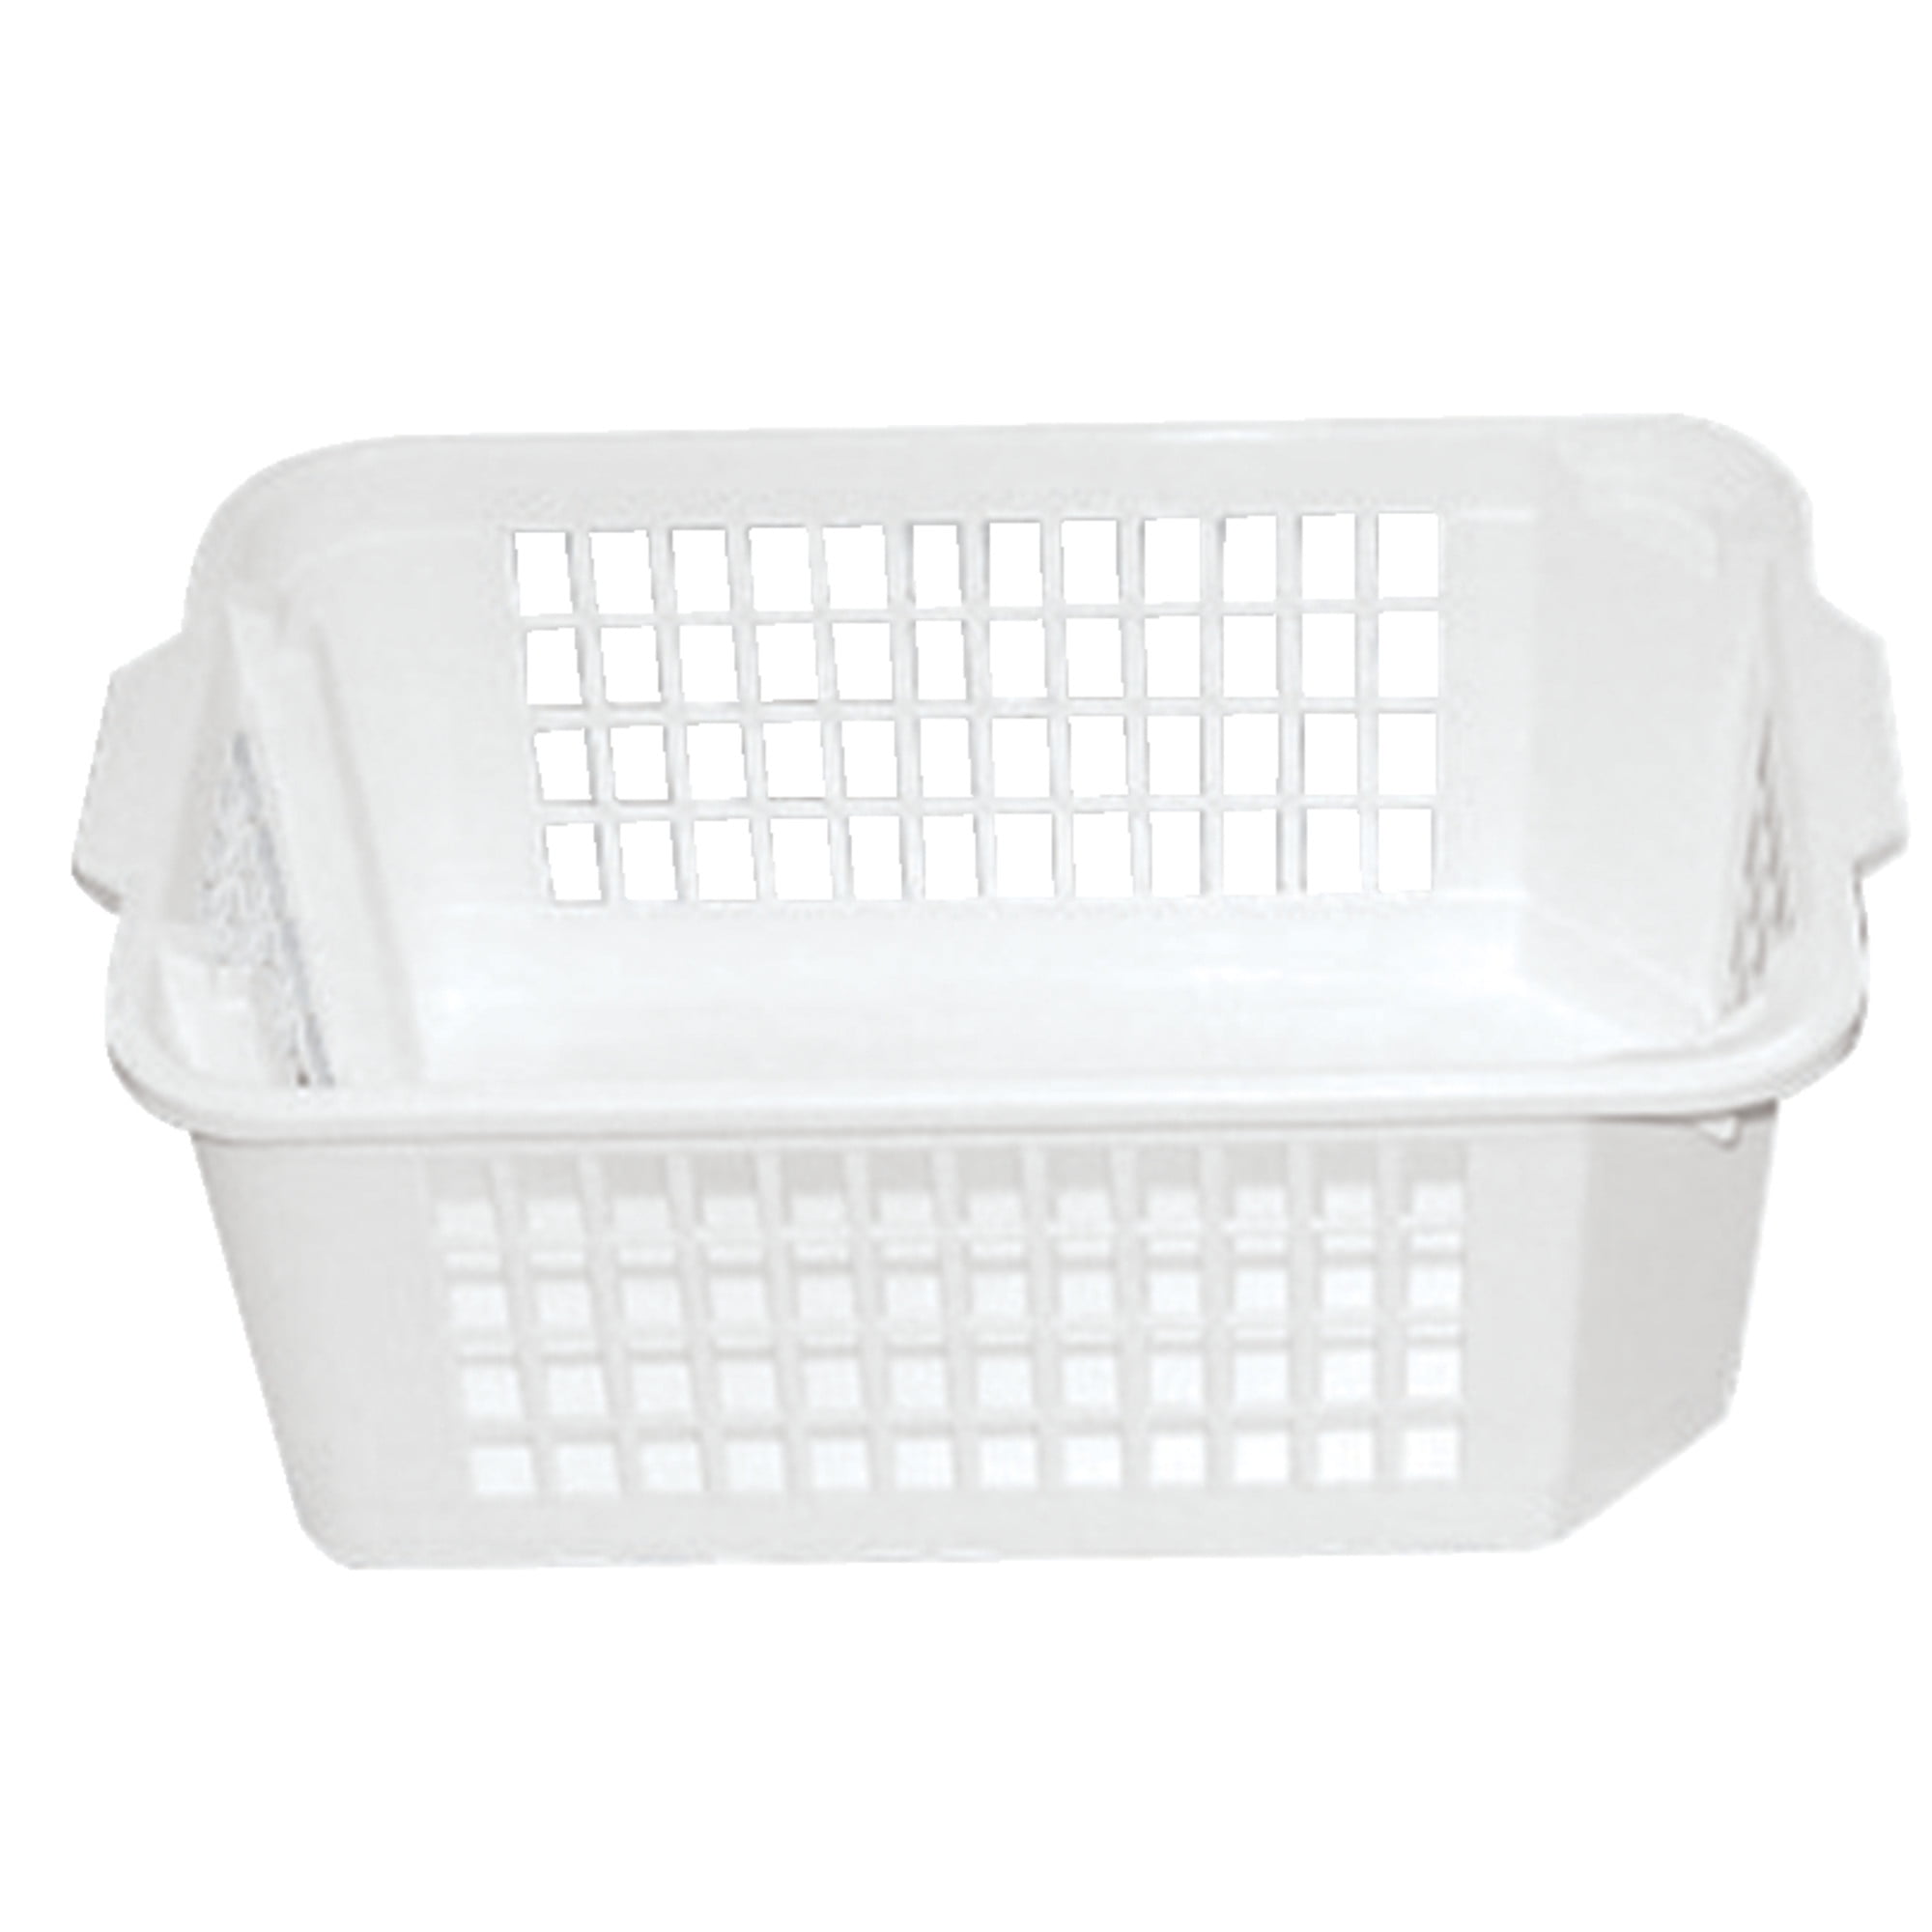 Plastic Storage Trays Baskets/Organizing Baskets 10 1/2 x 3 1/4 x 2 2/4